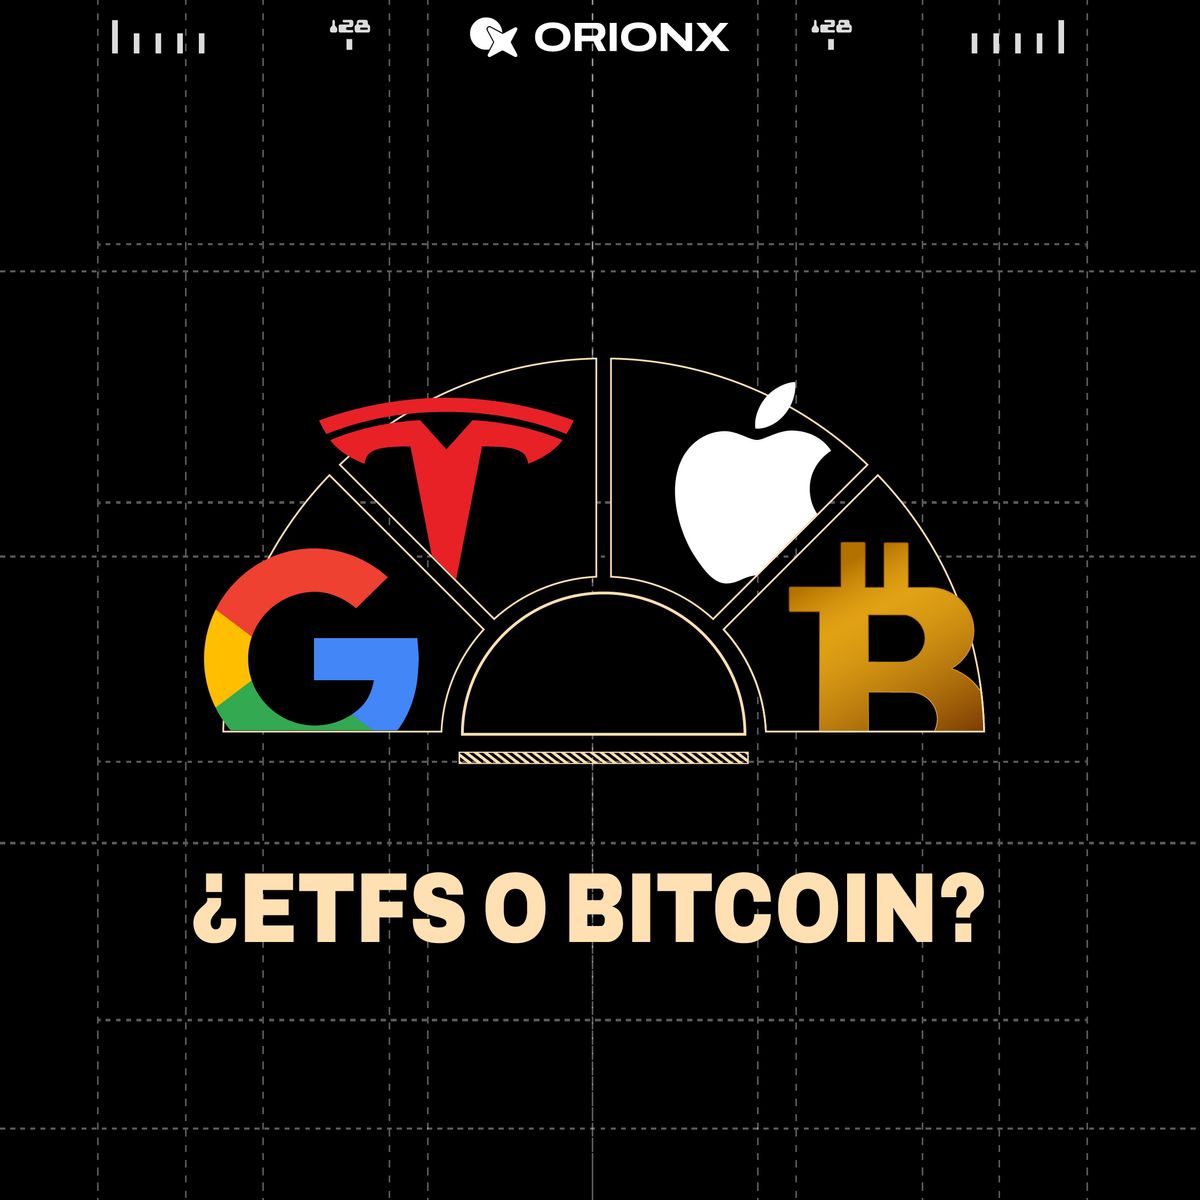 ¿ETFs vs Bitcoin? o ¿Ambas?